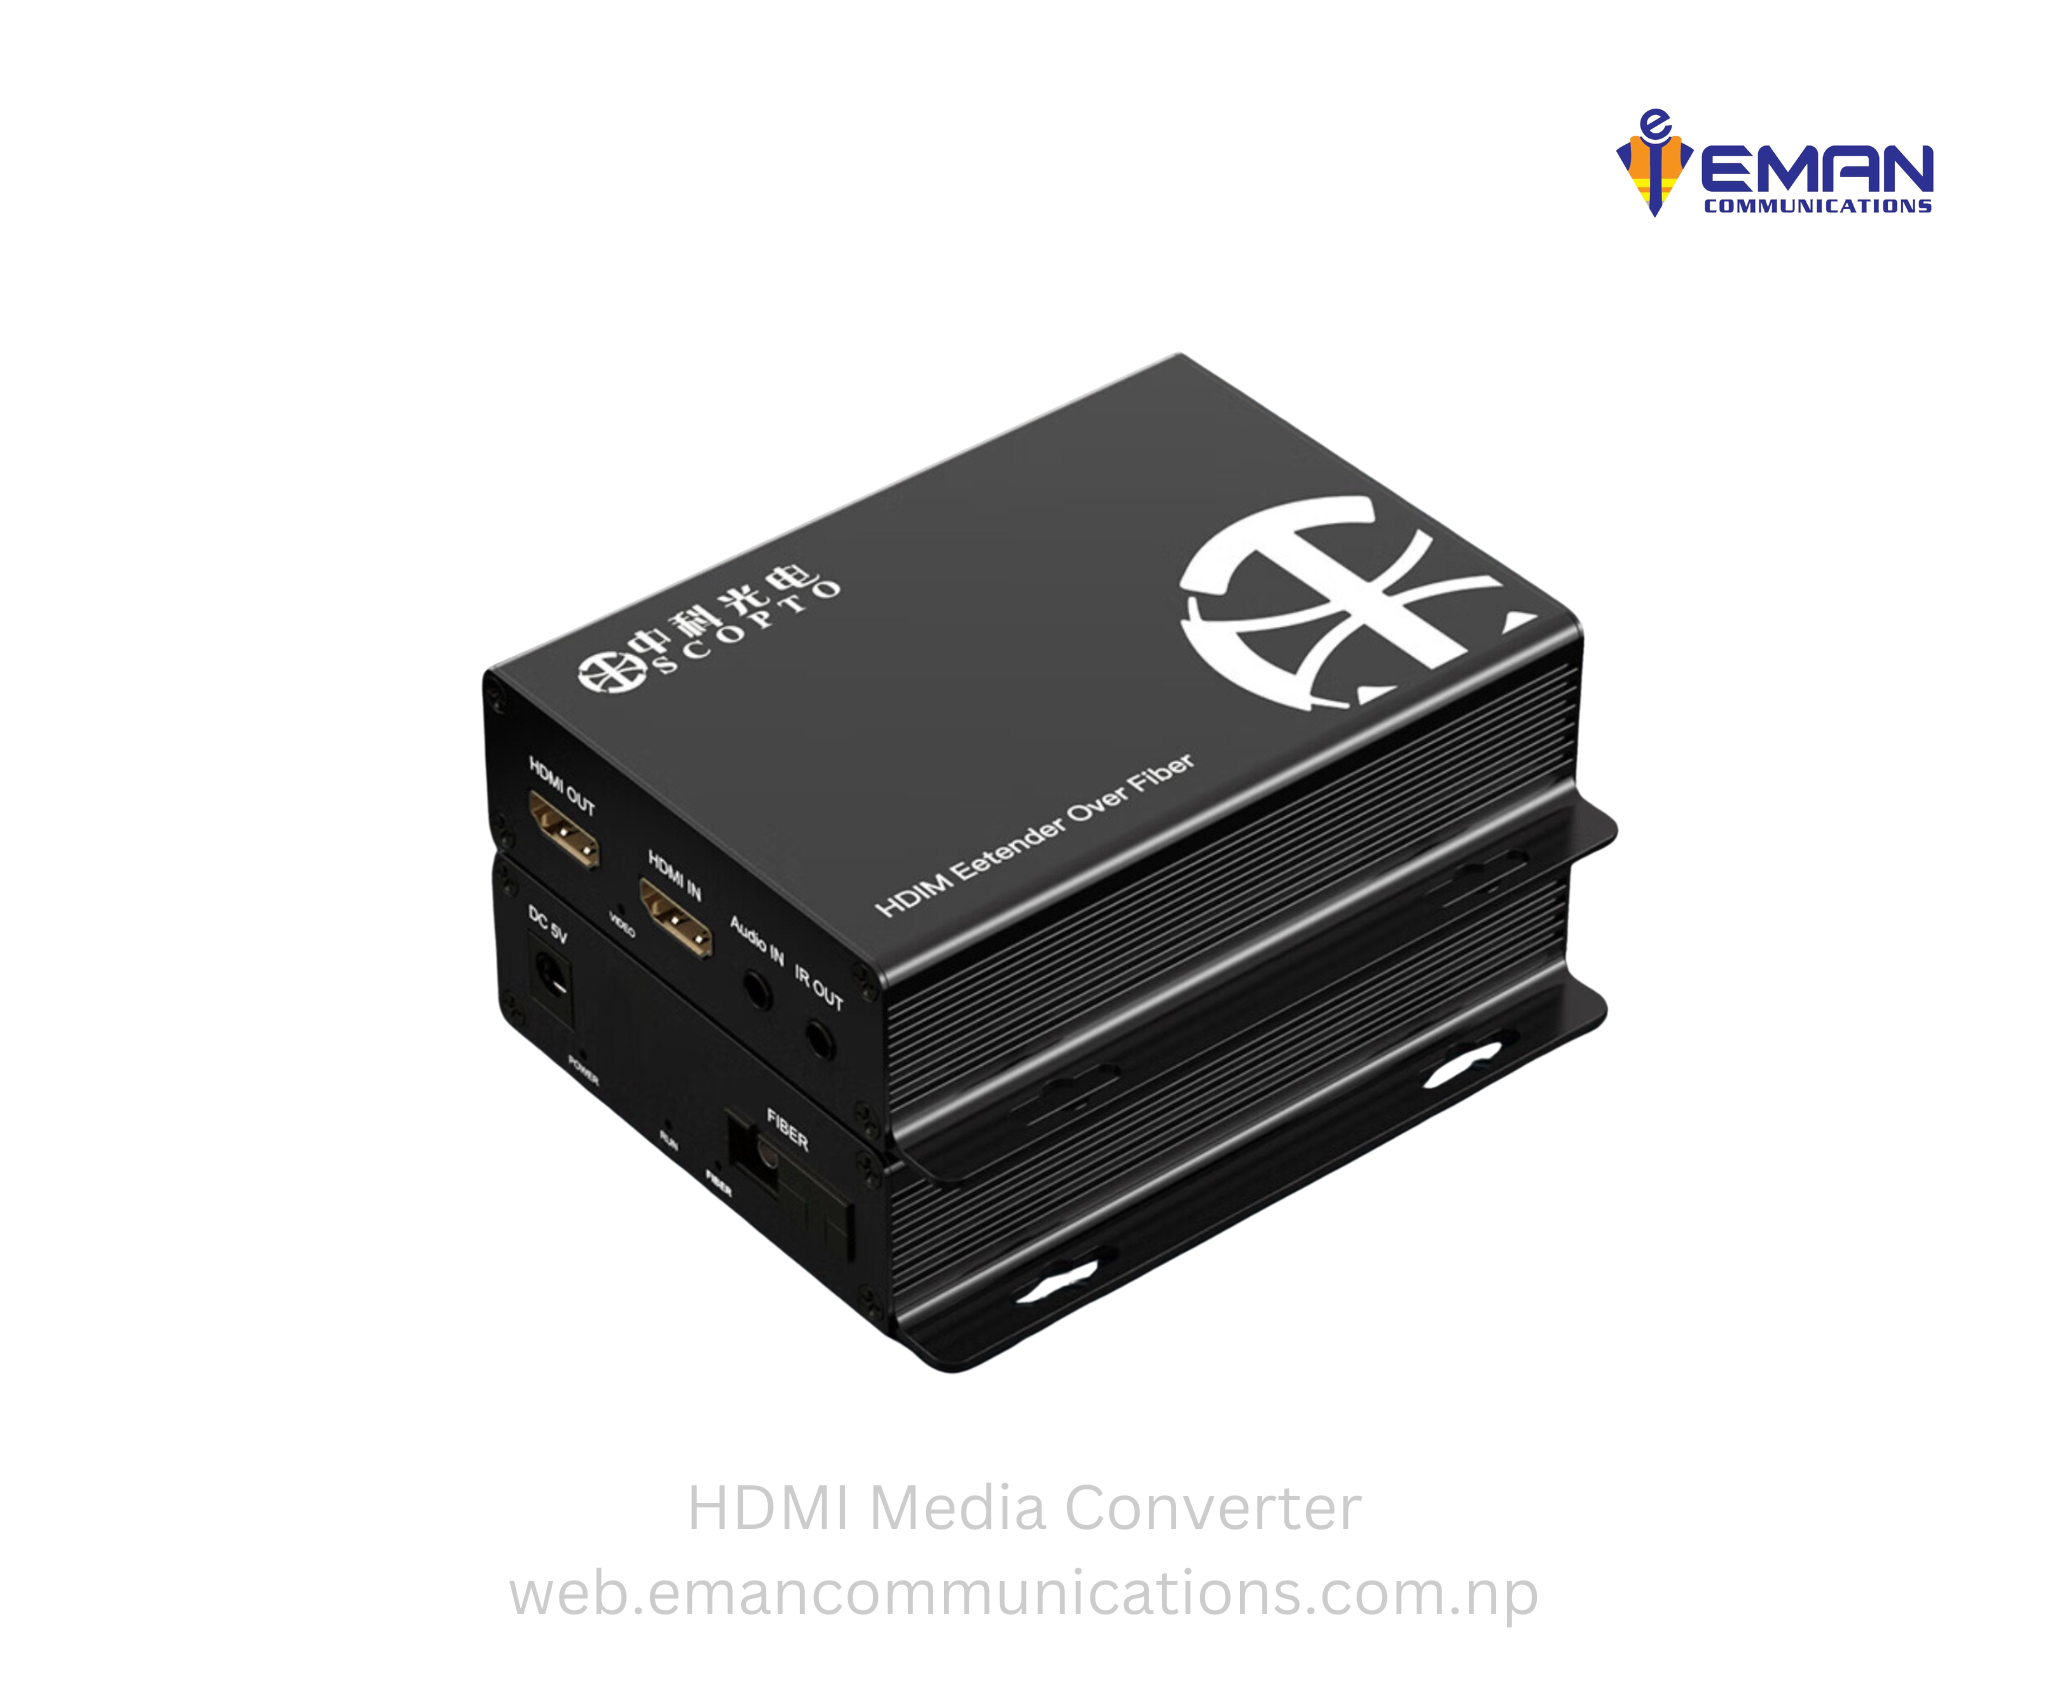 HDMI media converter